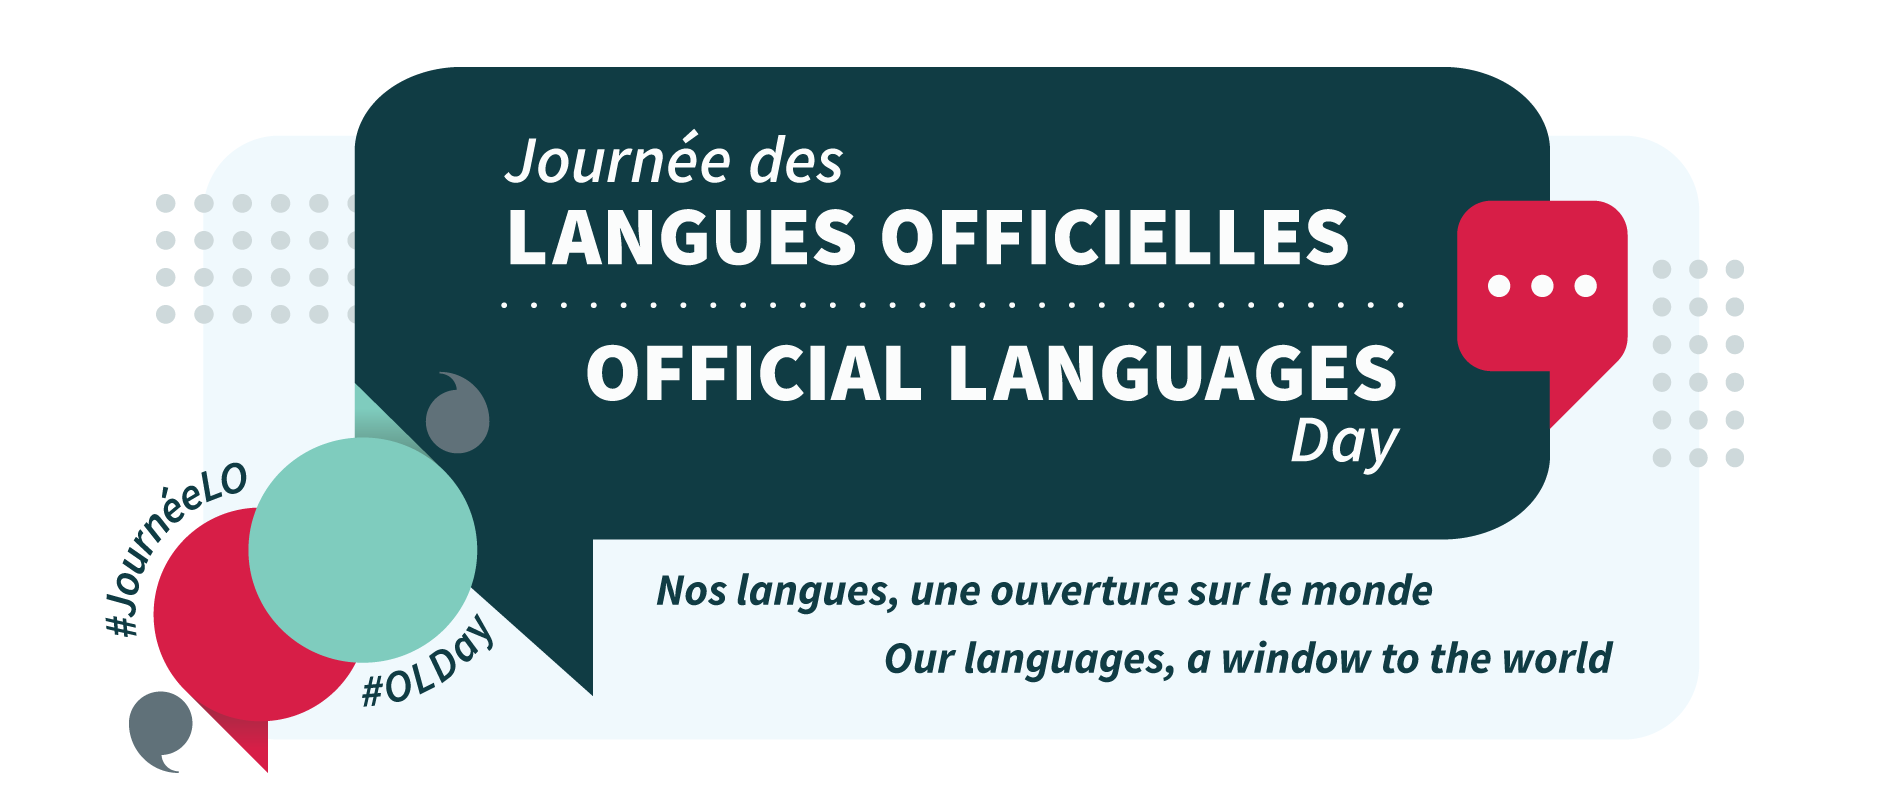 Visuel de la Journée des langues officielles avec des bulles de texte colorées et les mots-clics #JournéeLO #OLDay